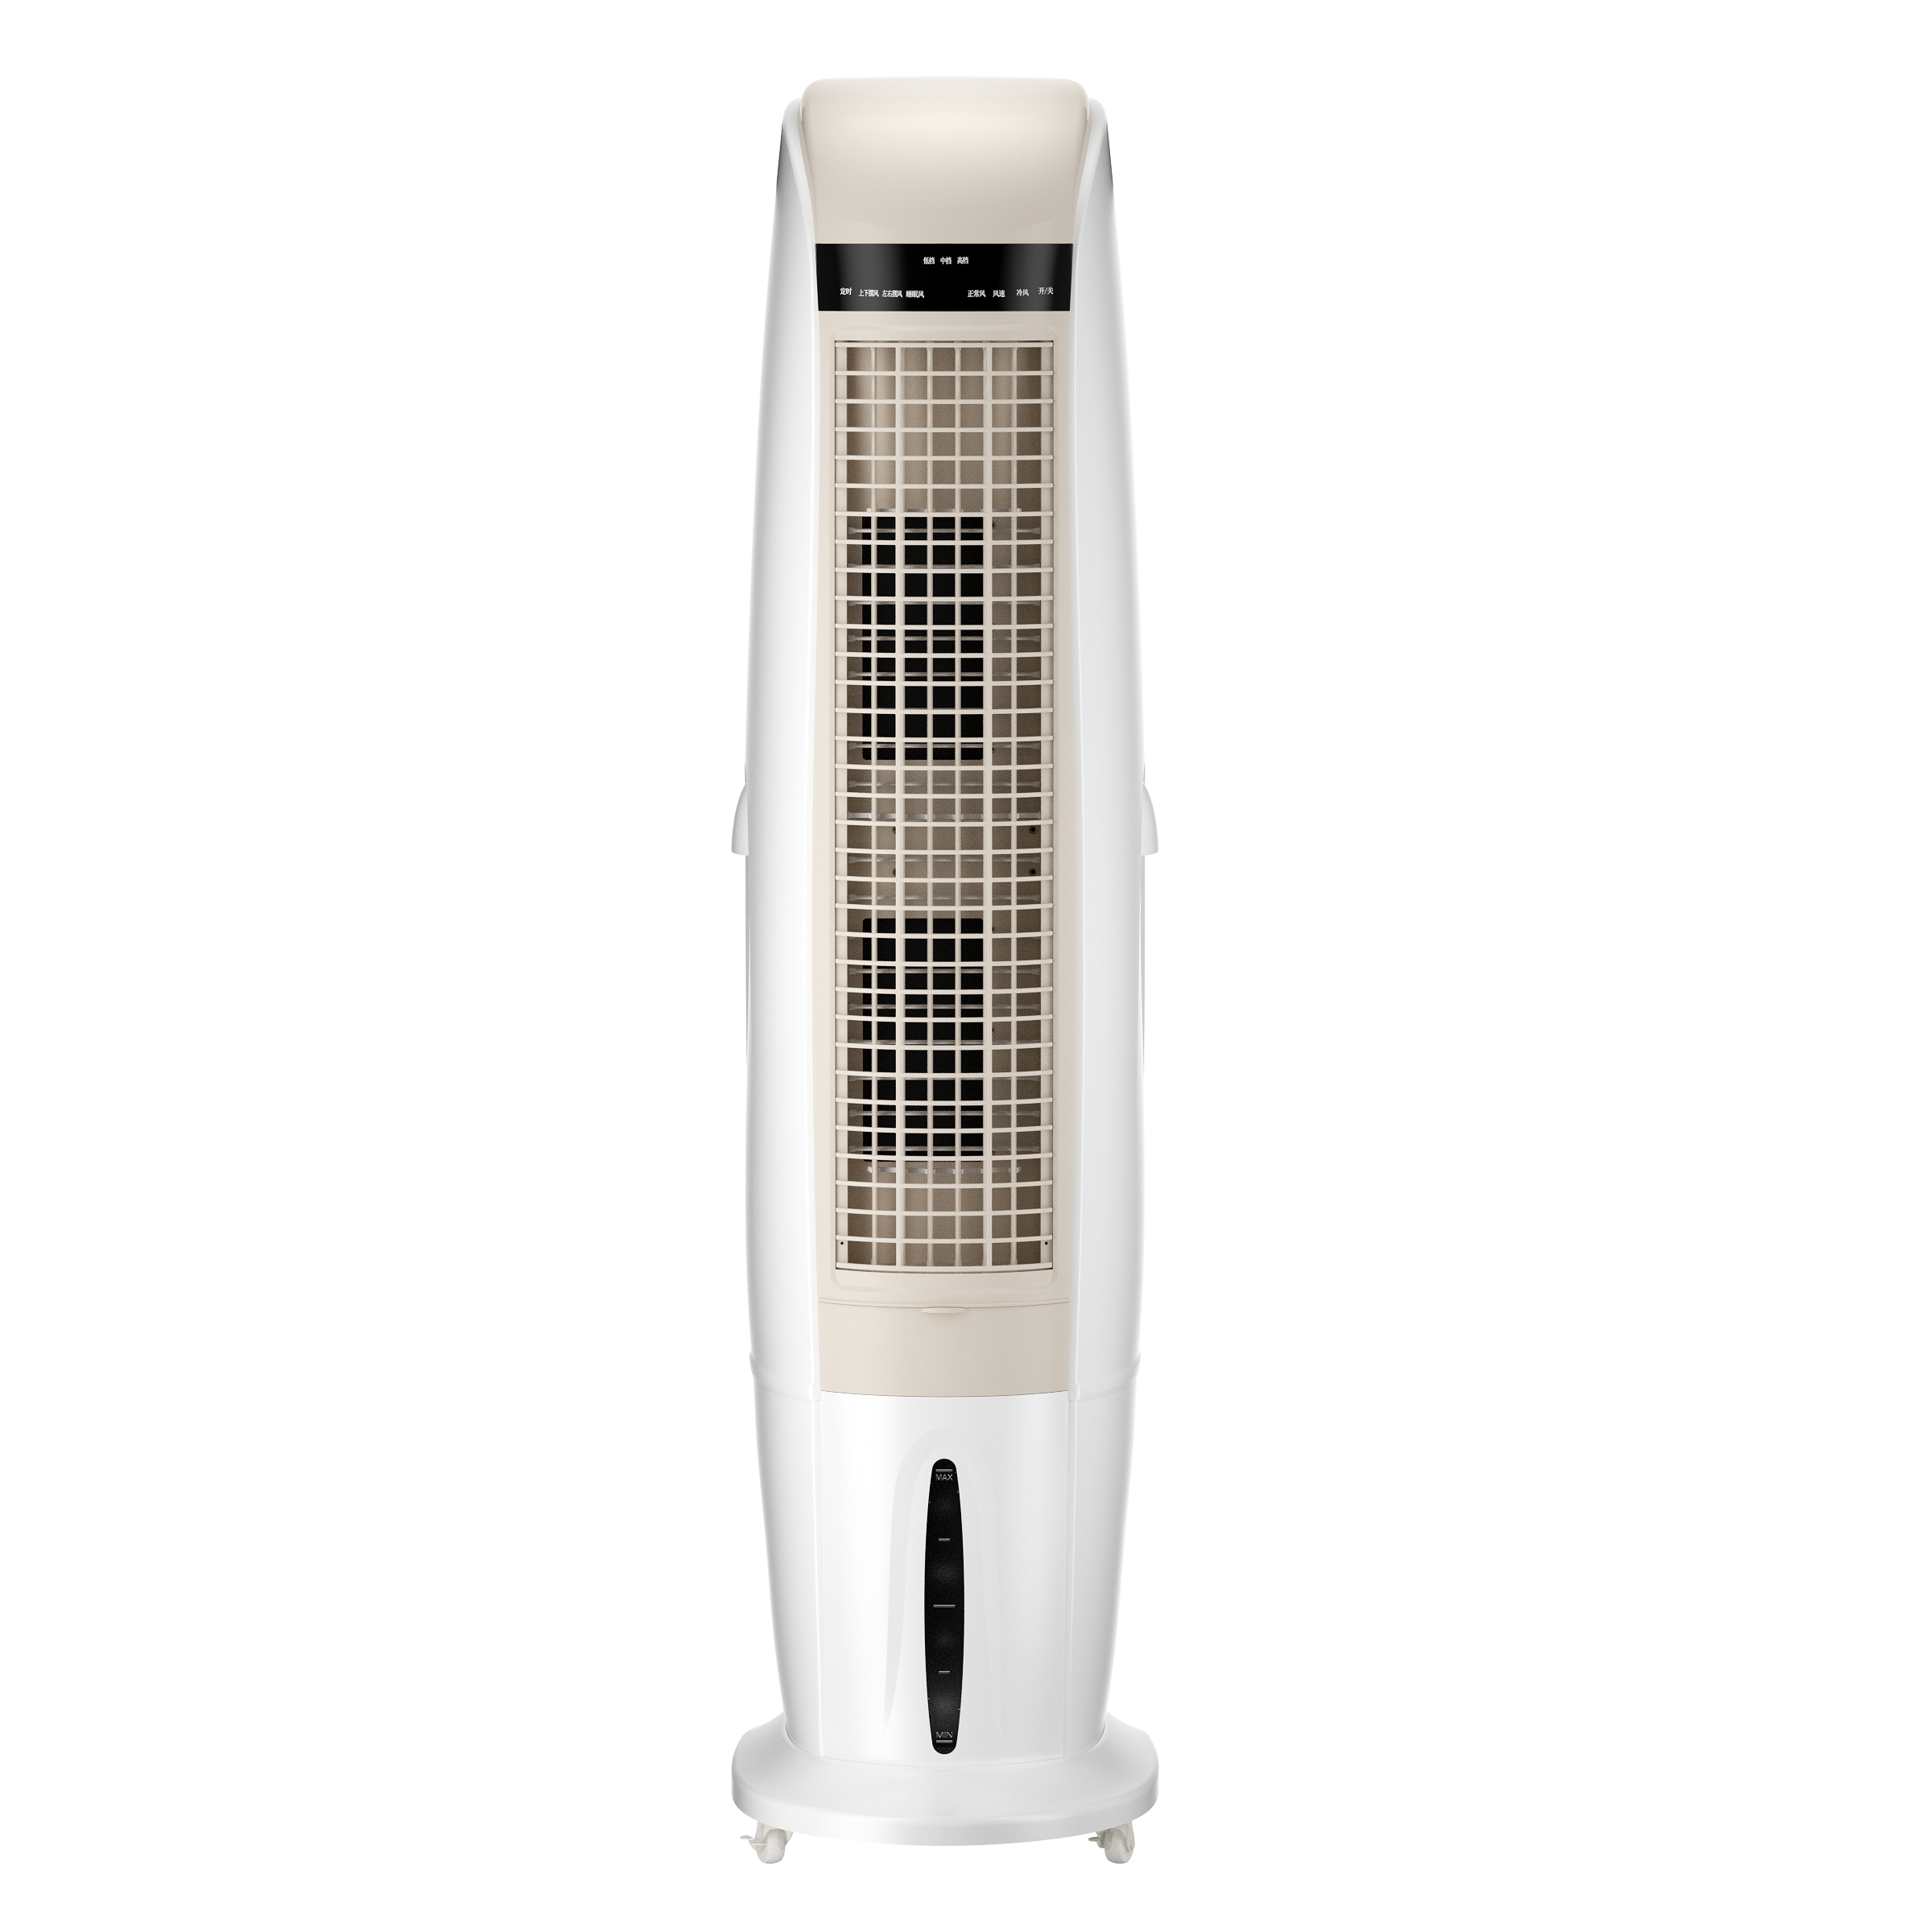 Refroidisseur d'air mobile amovible Ventilateur de refroidissement rapide Air Conditionneur de refroidisseur d'air évaporatif portable 